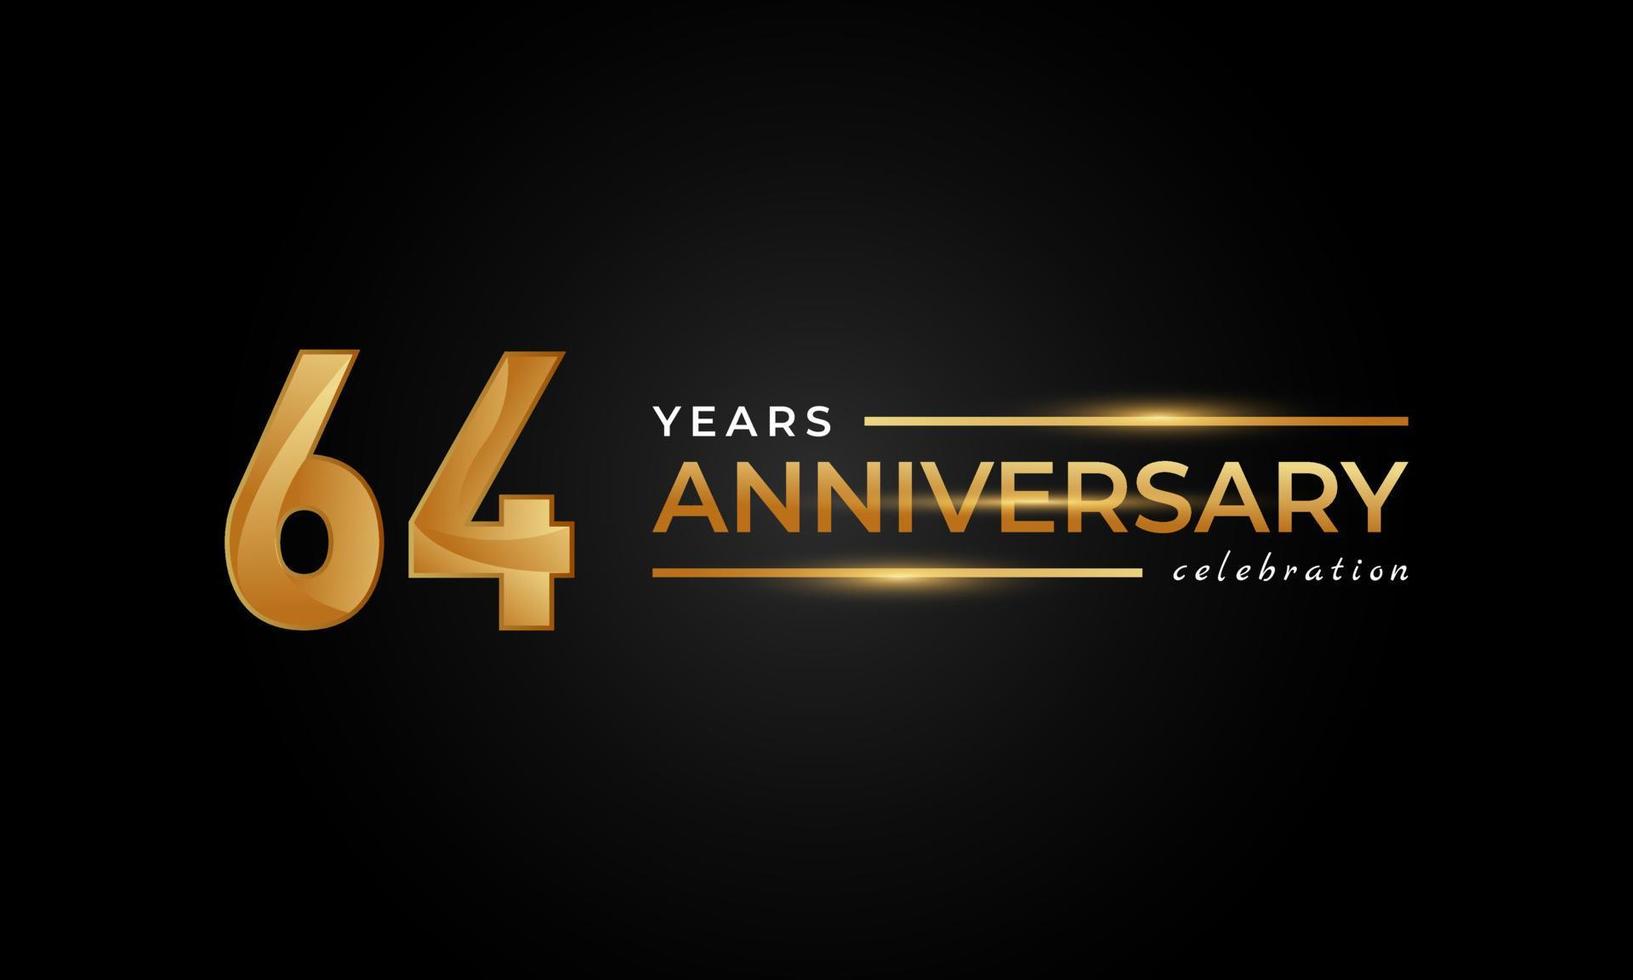 Celebrazione dell'anniversario di 64 anni con colore dorato e argento lucido per eventi celebrativi, matrimoni, biglietti di auguri e inviti isolati su sfondo nero vettore